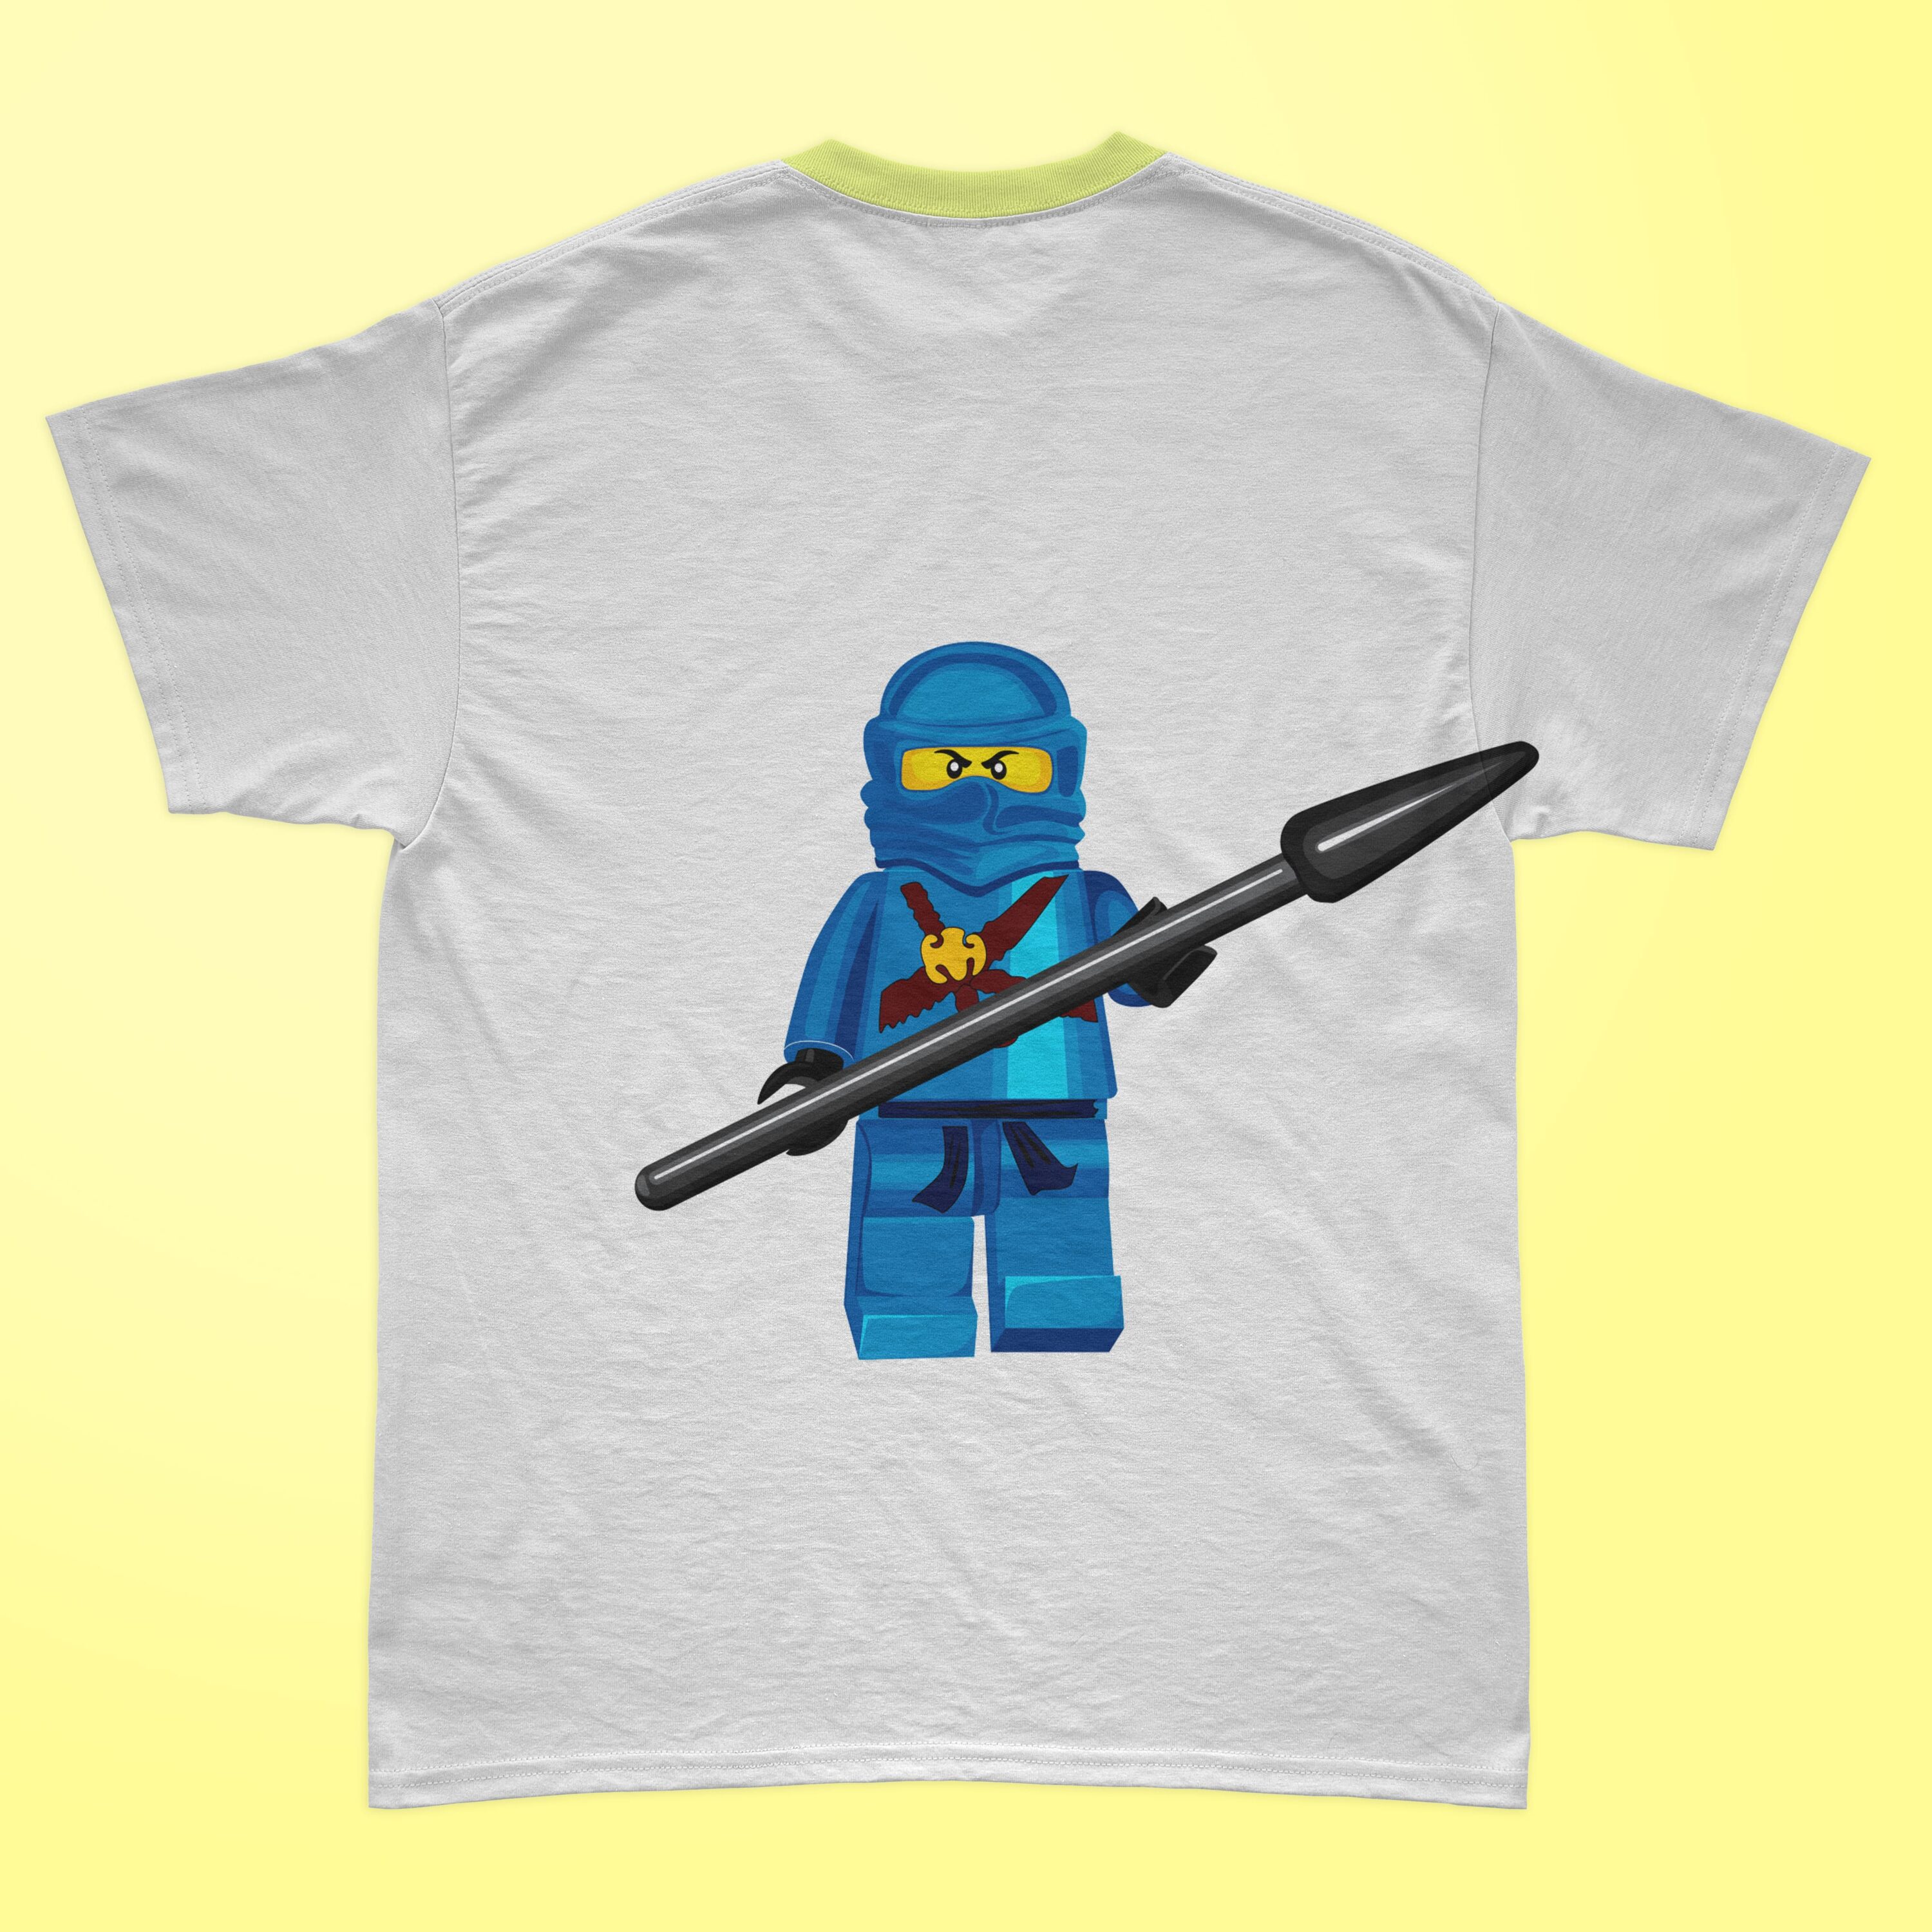 Blue lego ninjago printed on the t-shirt.